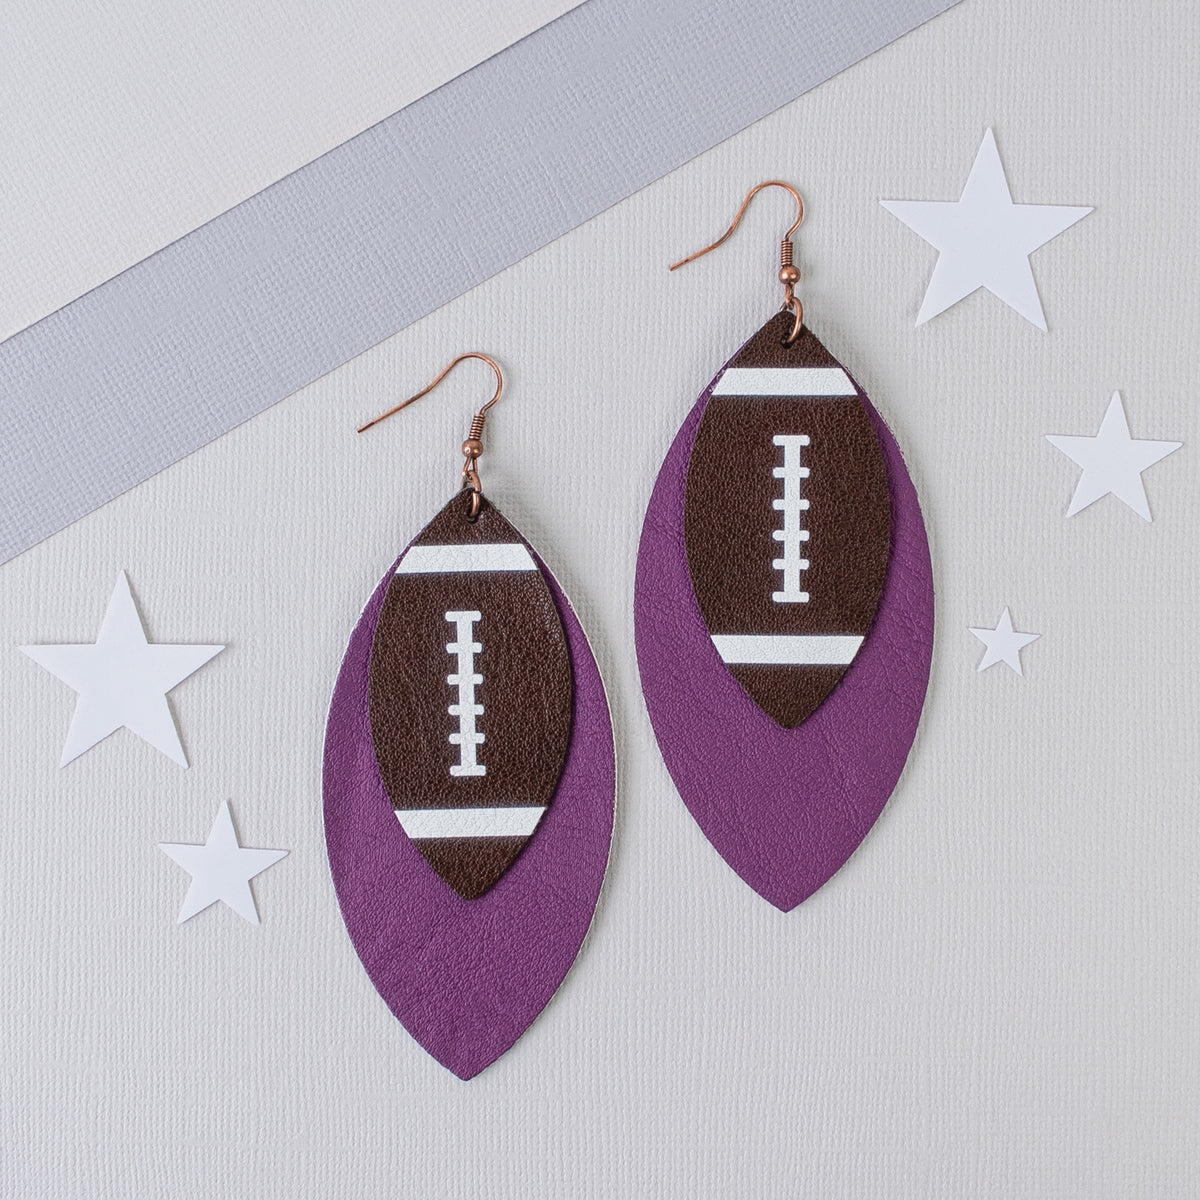 73754 - Football Earrings - Purple